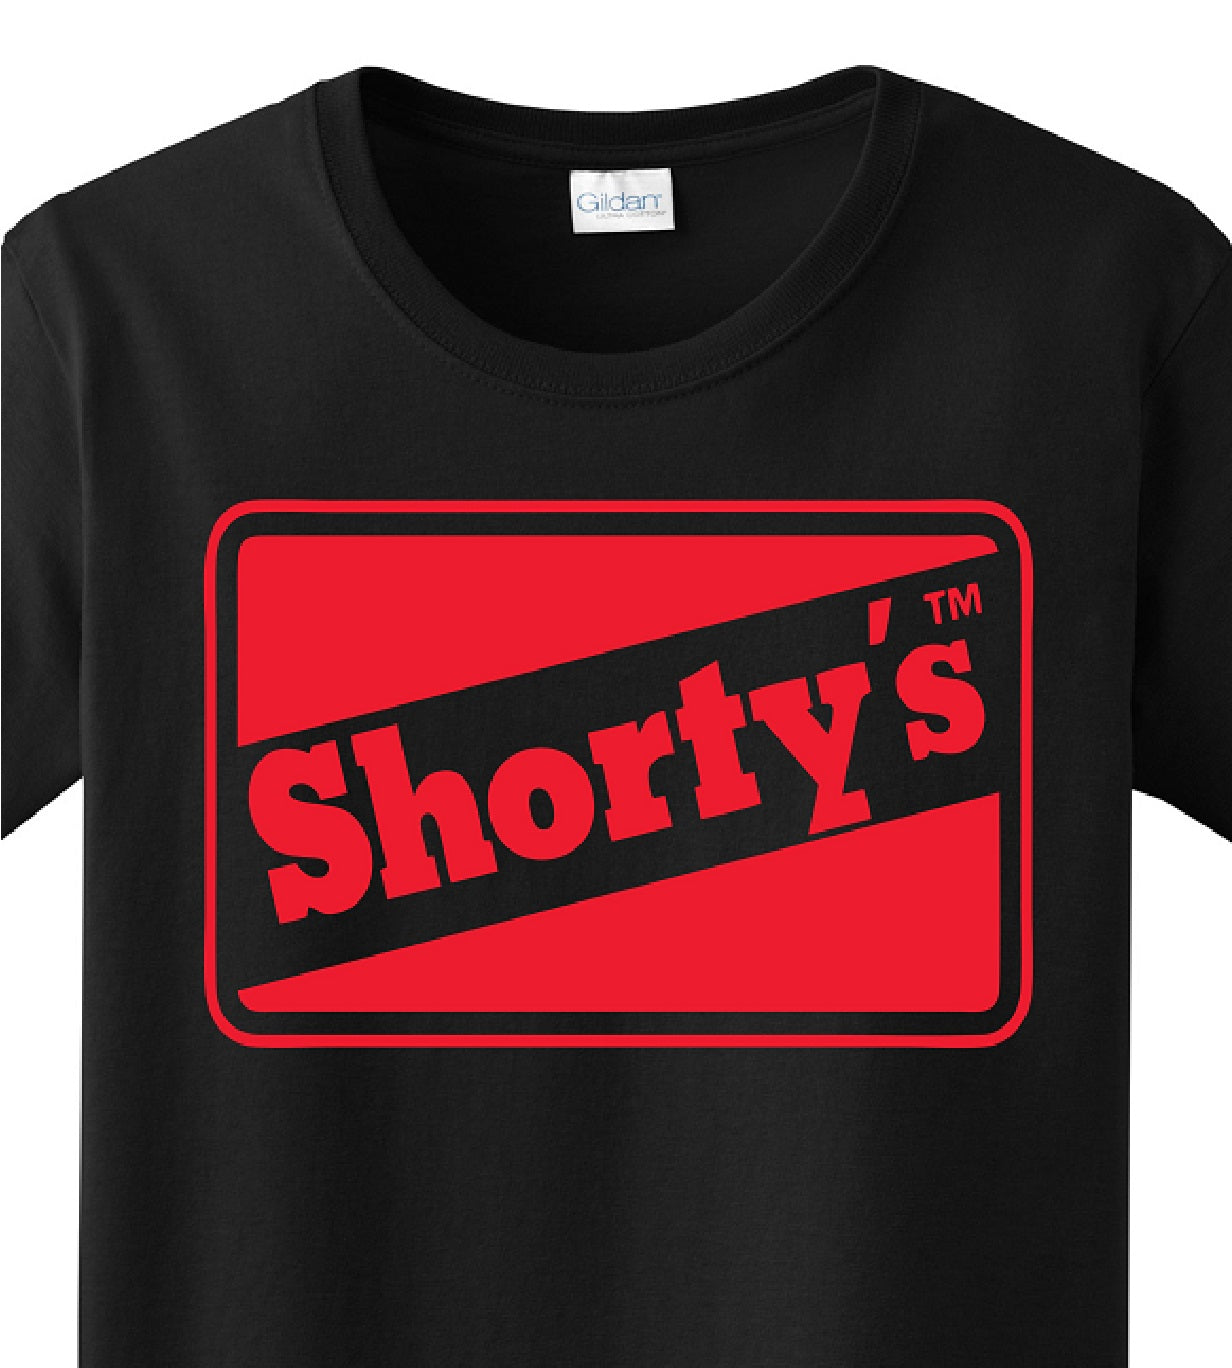 Skate Men's Shirt -Shorty's (Black) -Red Print - MYSTYLEMYCLOTHING